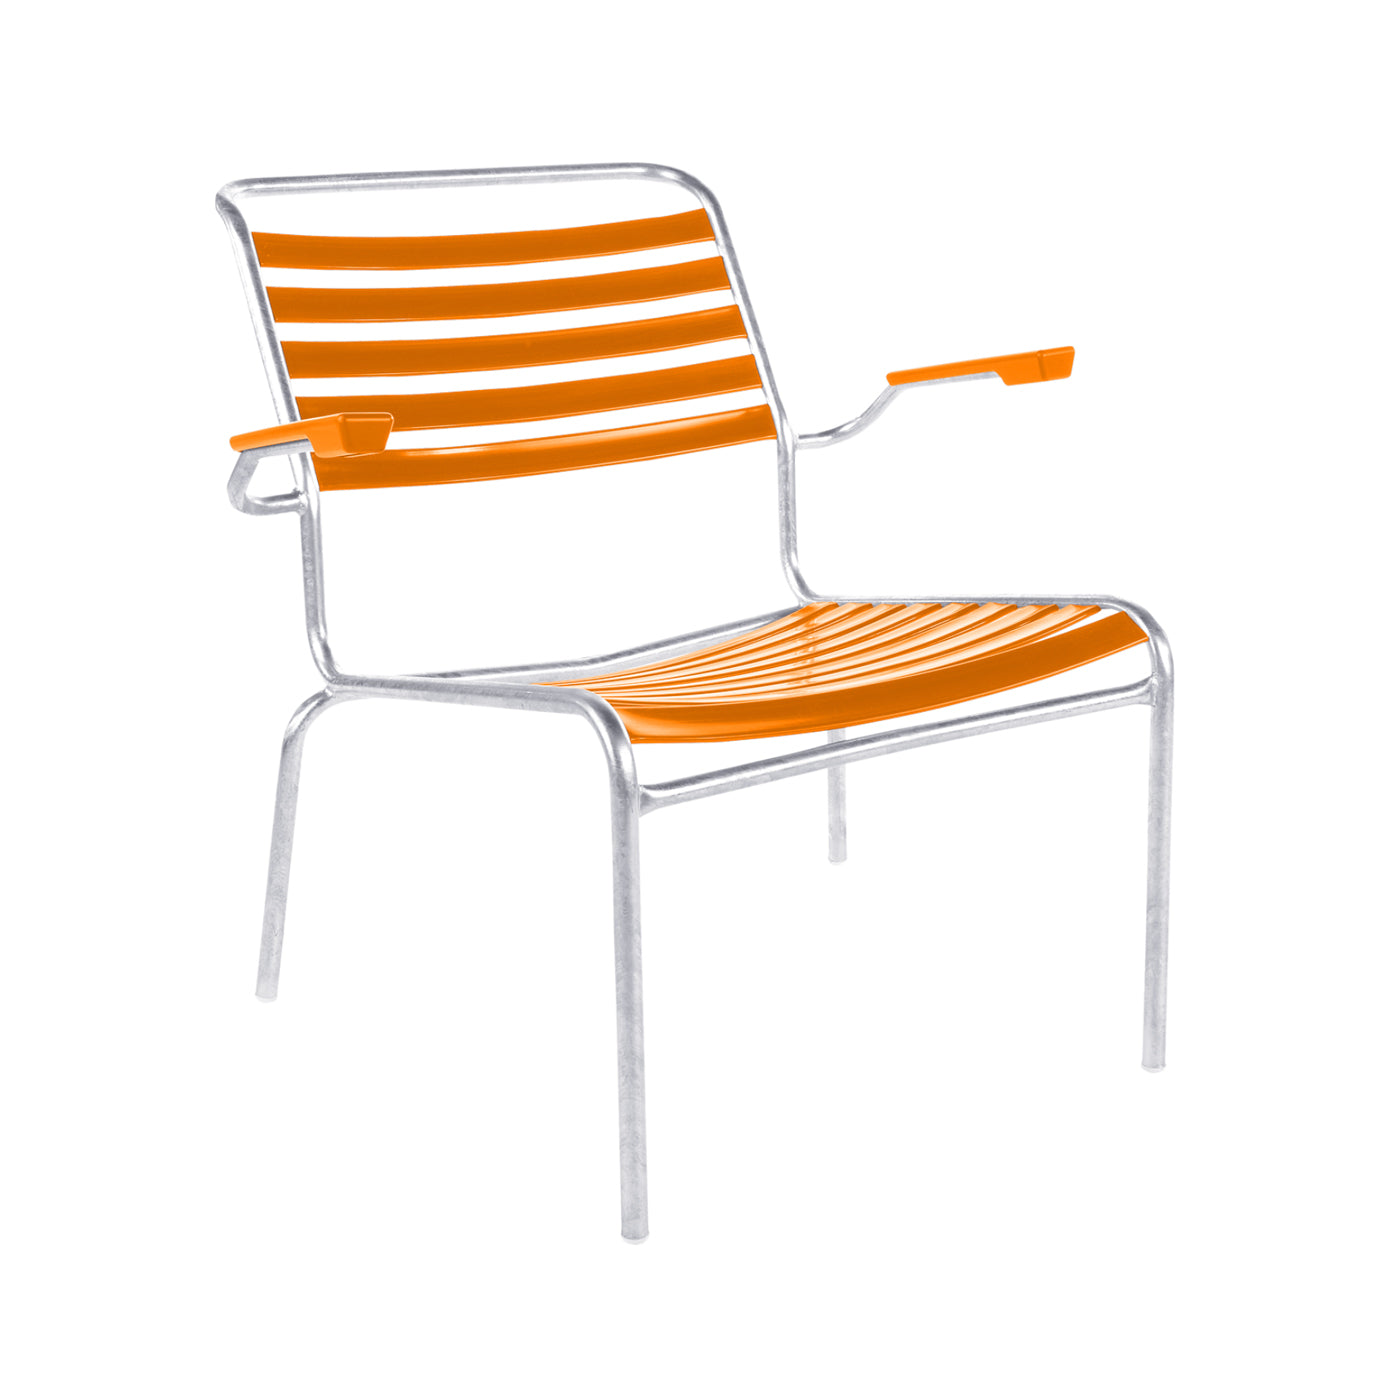 Schaffner Lättli Lounge Chair – Säntis mit Armlehne